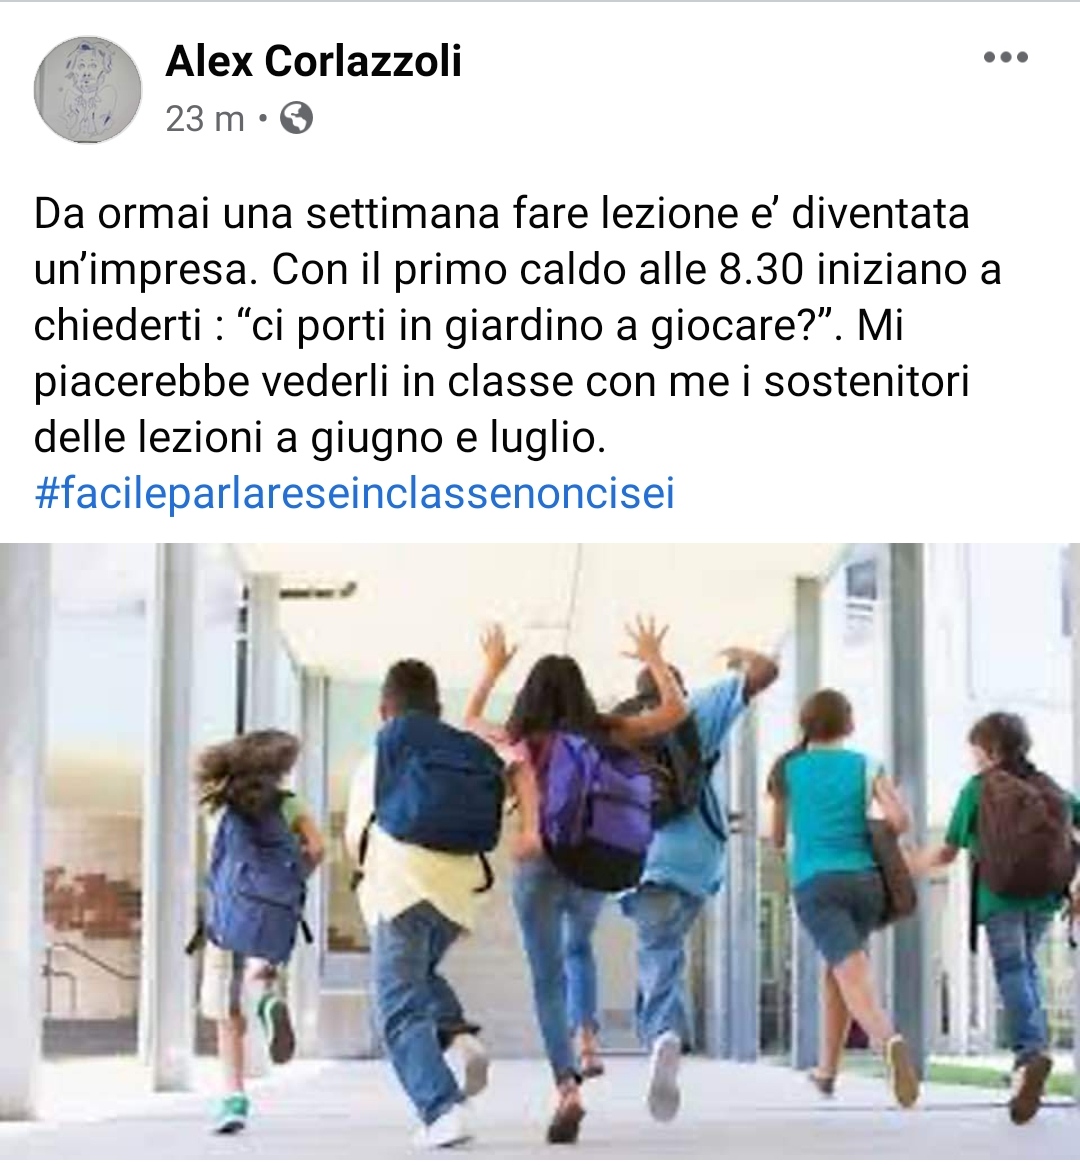 Il Maestro d’Italia Alex Corlazzoli: “Da una settimana, causa il caldo è difficile fare lezione in classe. Ditelo a chi voleva lezioni a giugno e luglio